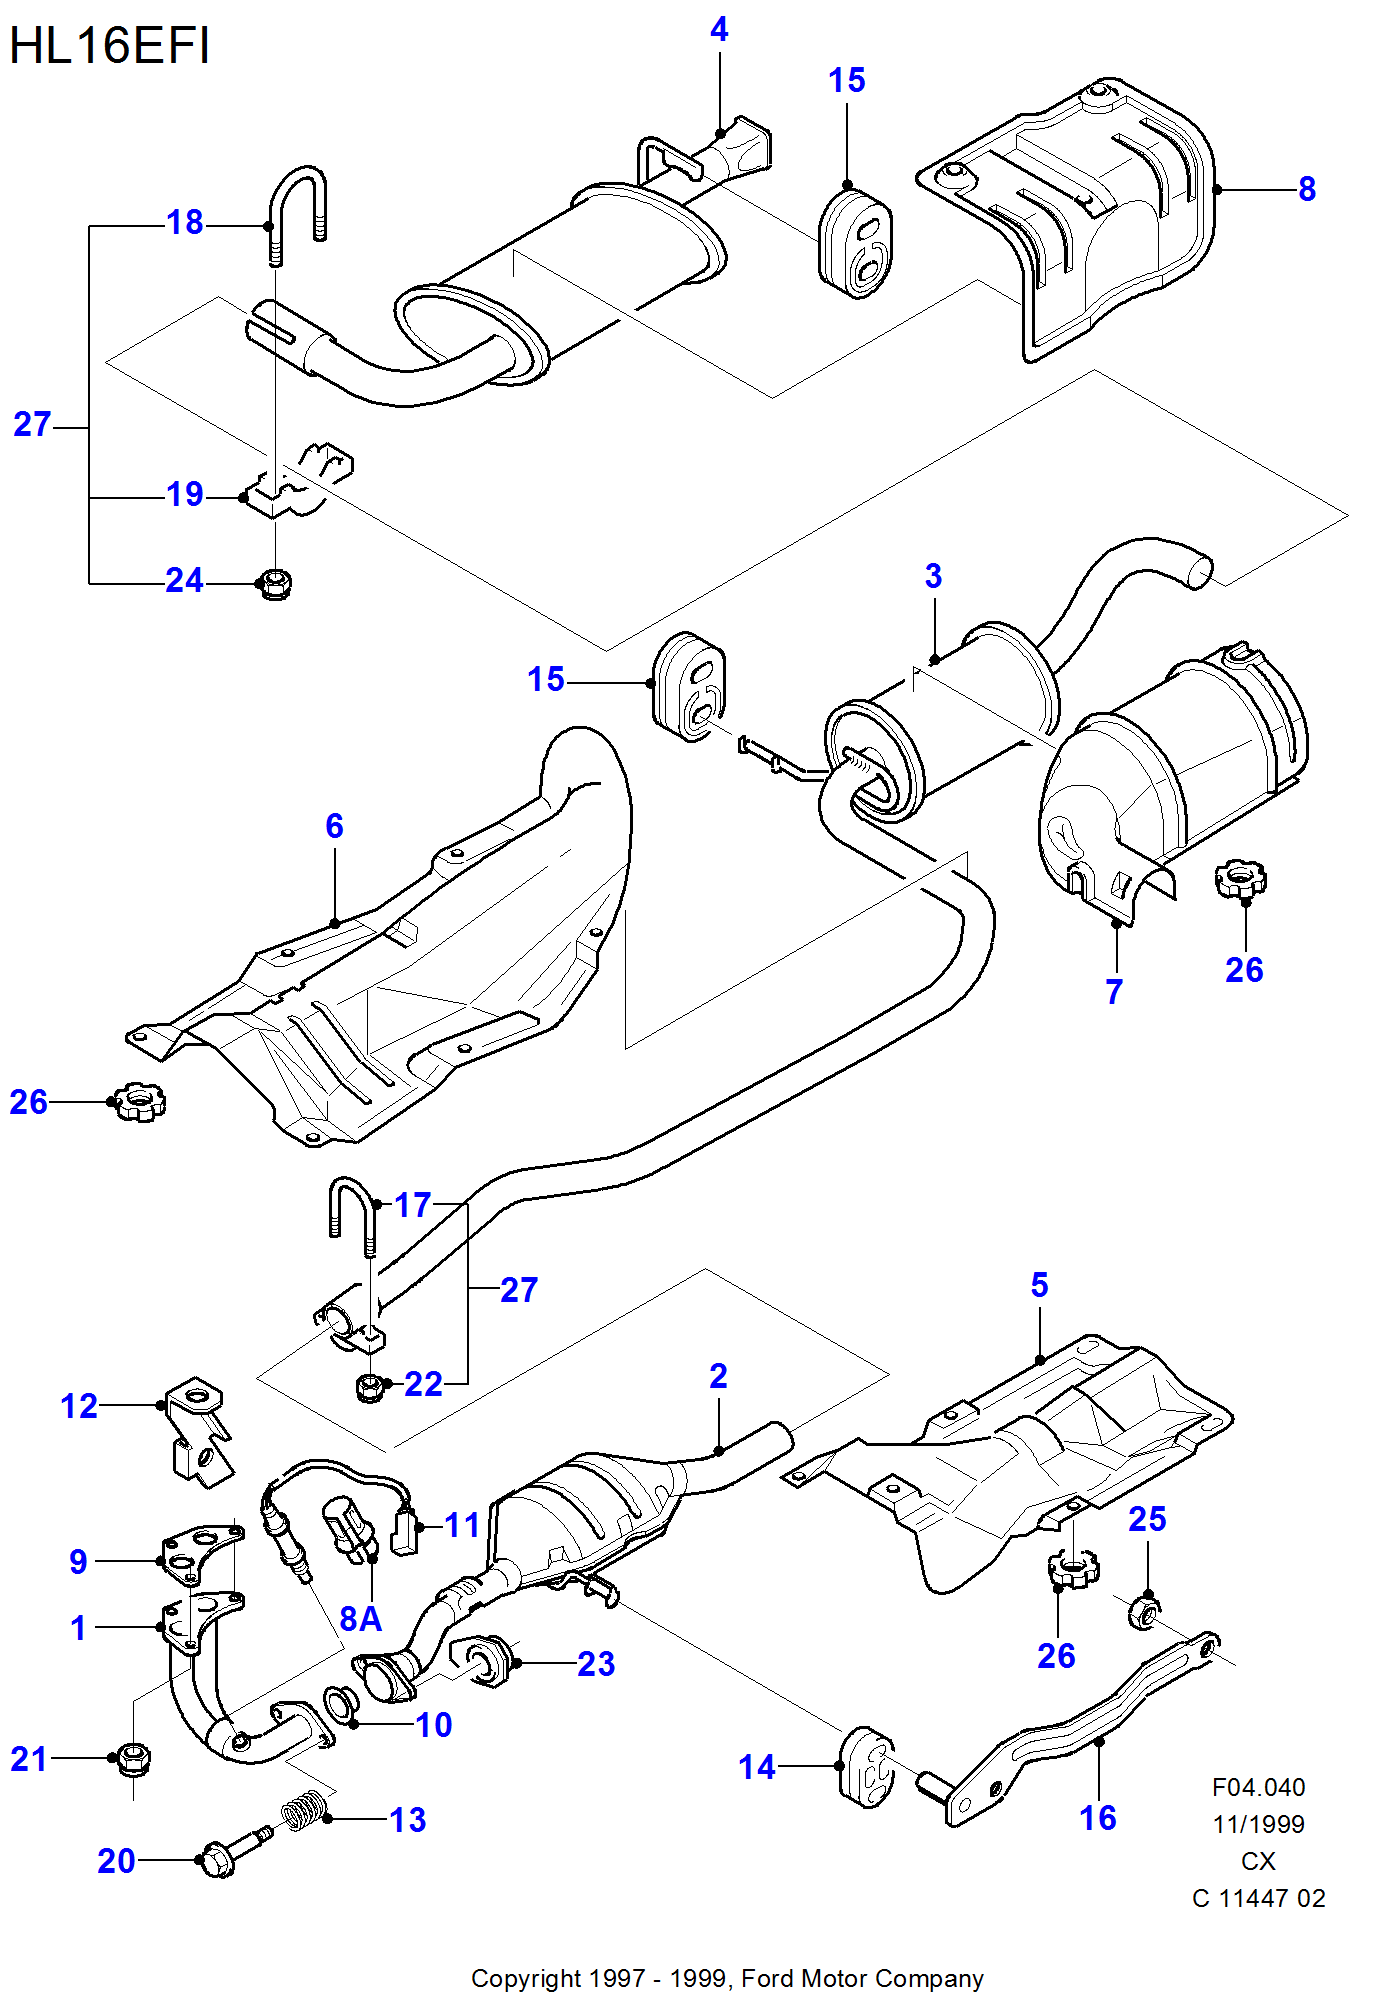 Exhaust System With Catalyst для Ford Fiesta Fiesta 1989-1996               (CX)